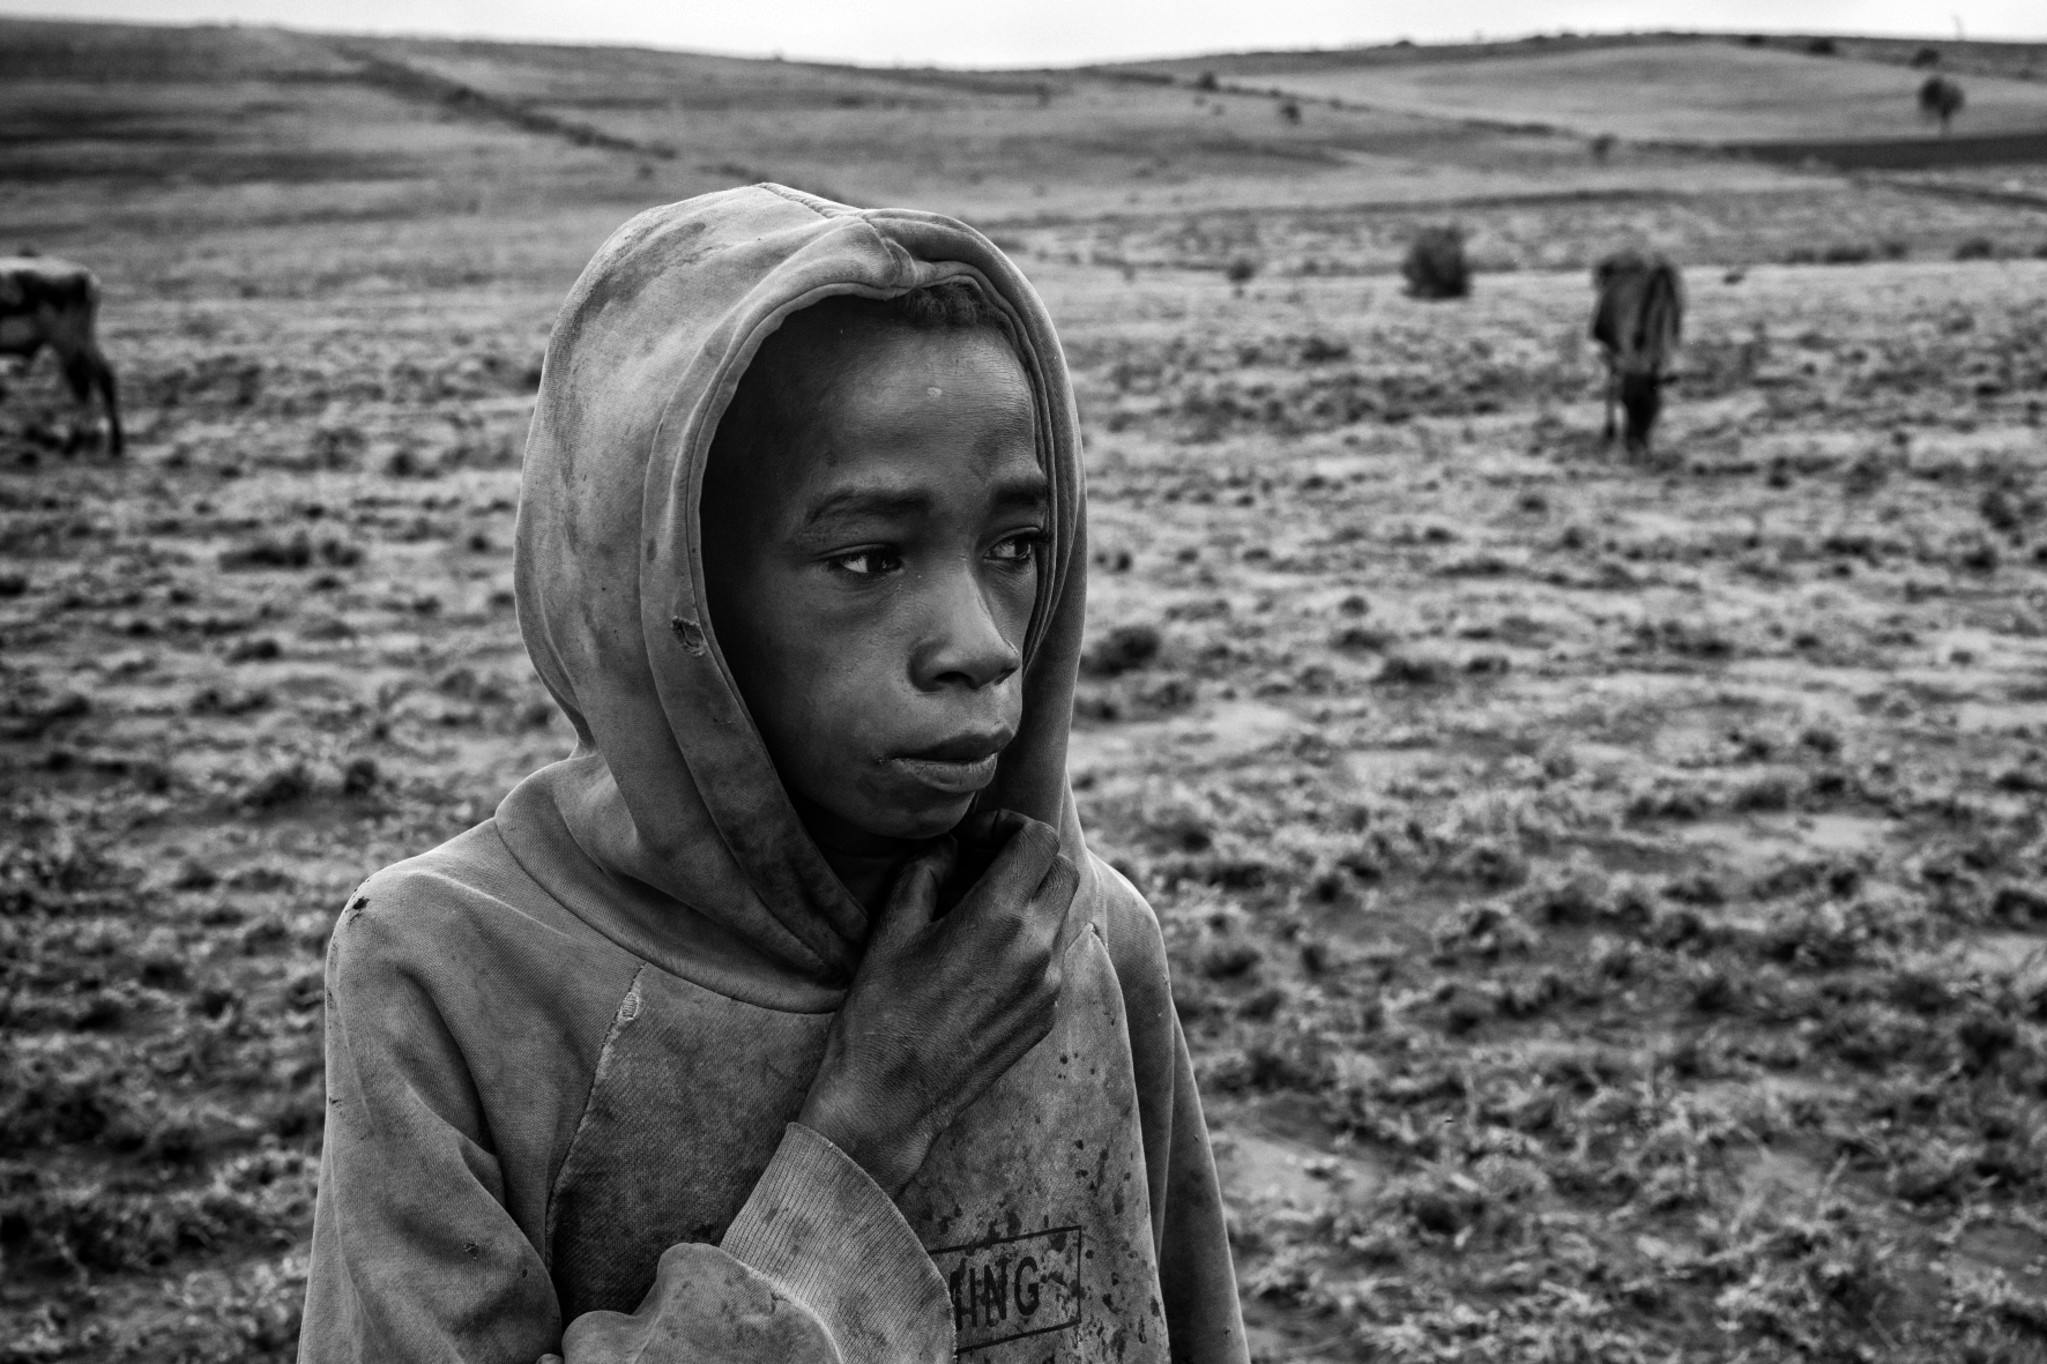 Amnesty International France - Madagascar
Le sud de Madagascar est en crise. La région sud du pays, communément appelée Le Grand Sud, connaît actuellement la pire sécheresse depuis 40 ans. Plus d'un million de personnes sont au bord de la famine